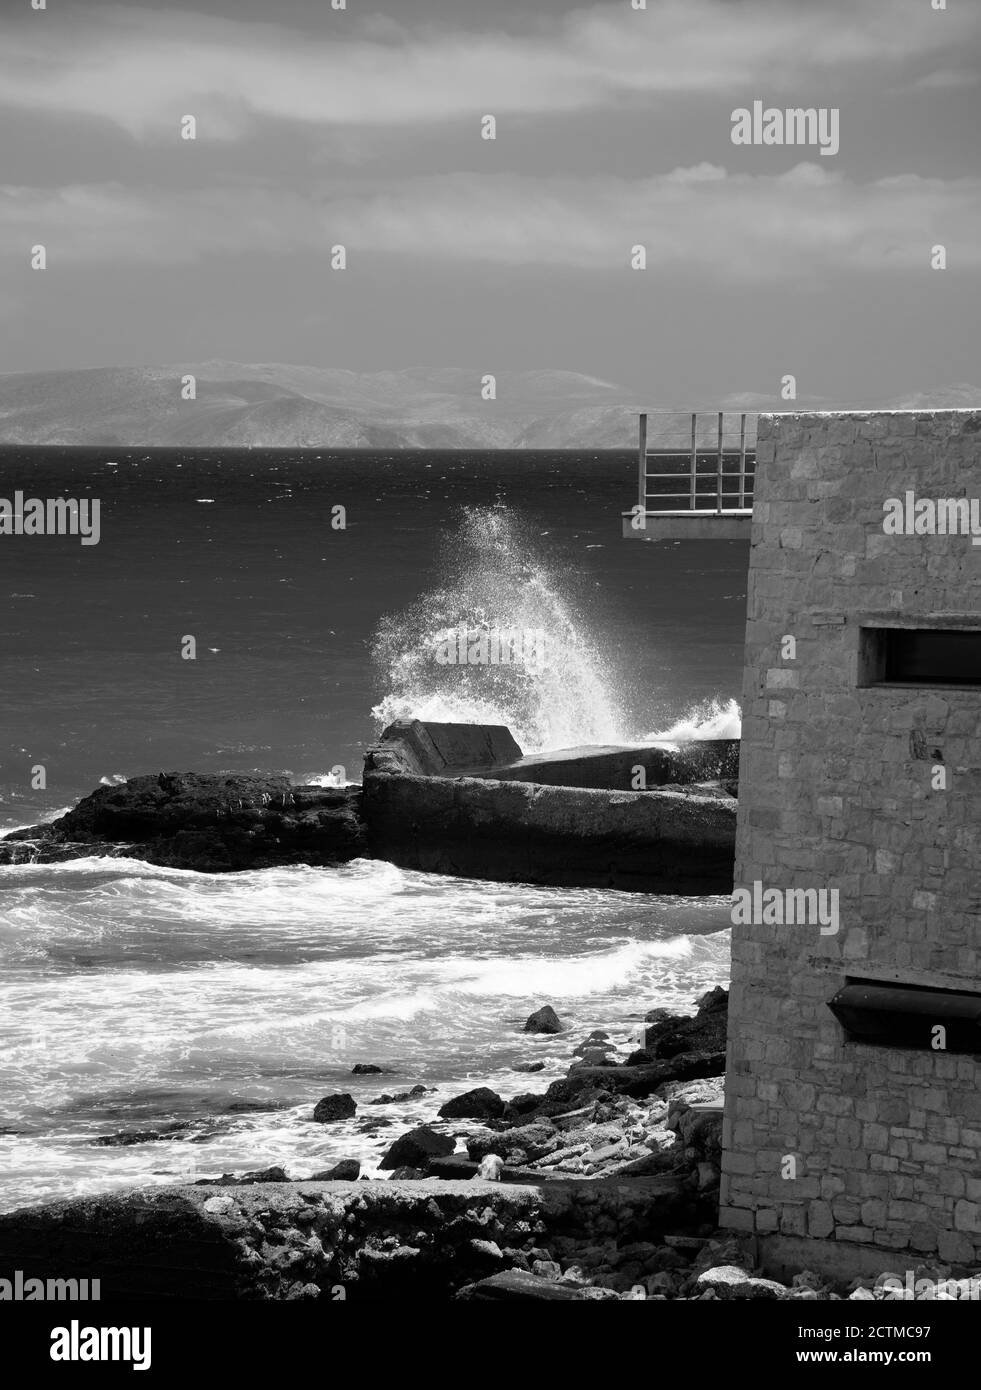 Une vague s'écrasant sur les rochers par une journée venteuse. Héraklion, Crète, Grèce. L'île de Dia (NTIA) visible en arrière-plan. Banque D'Images